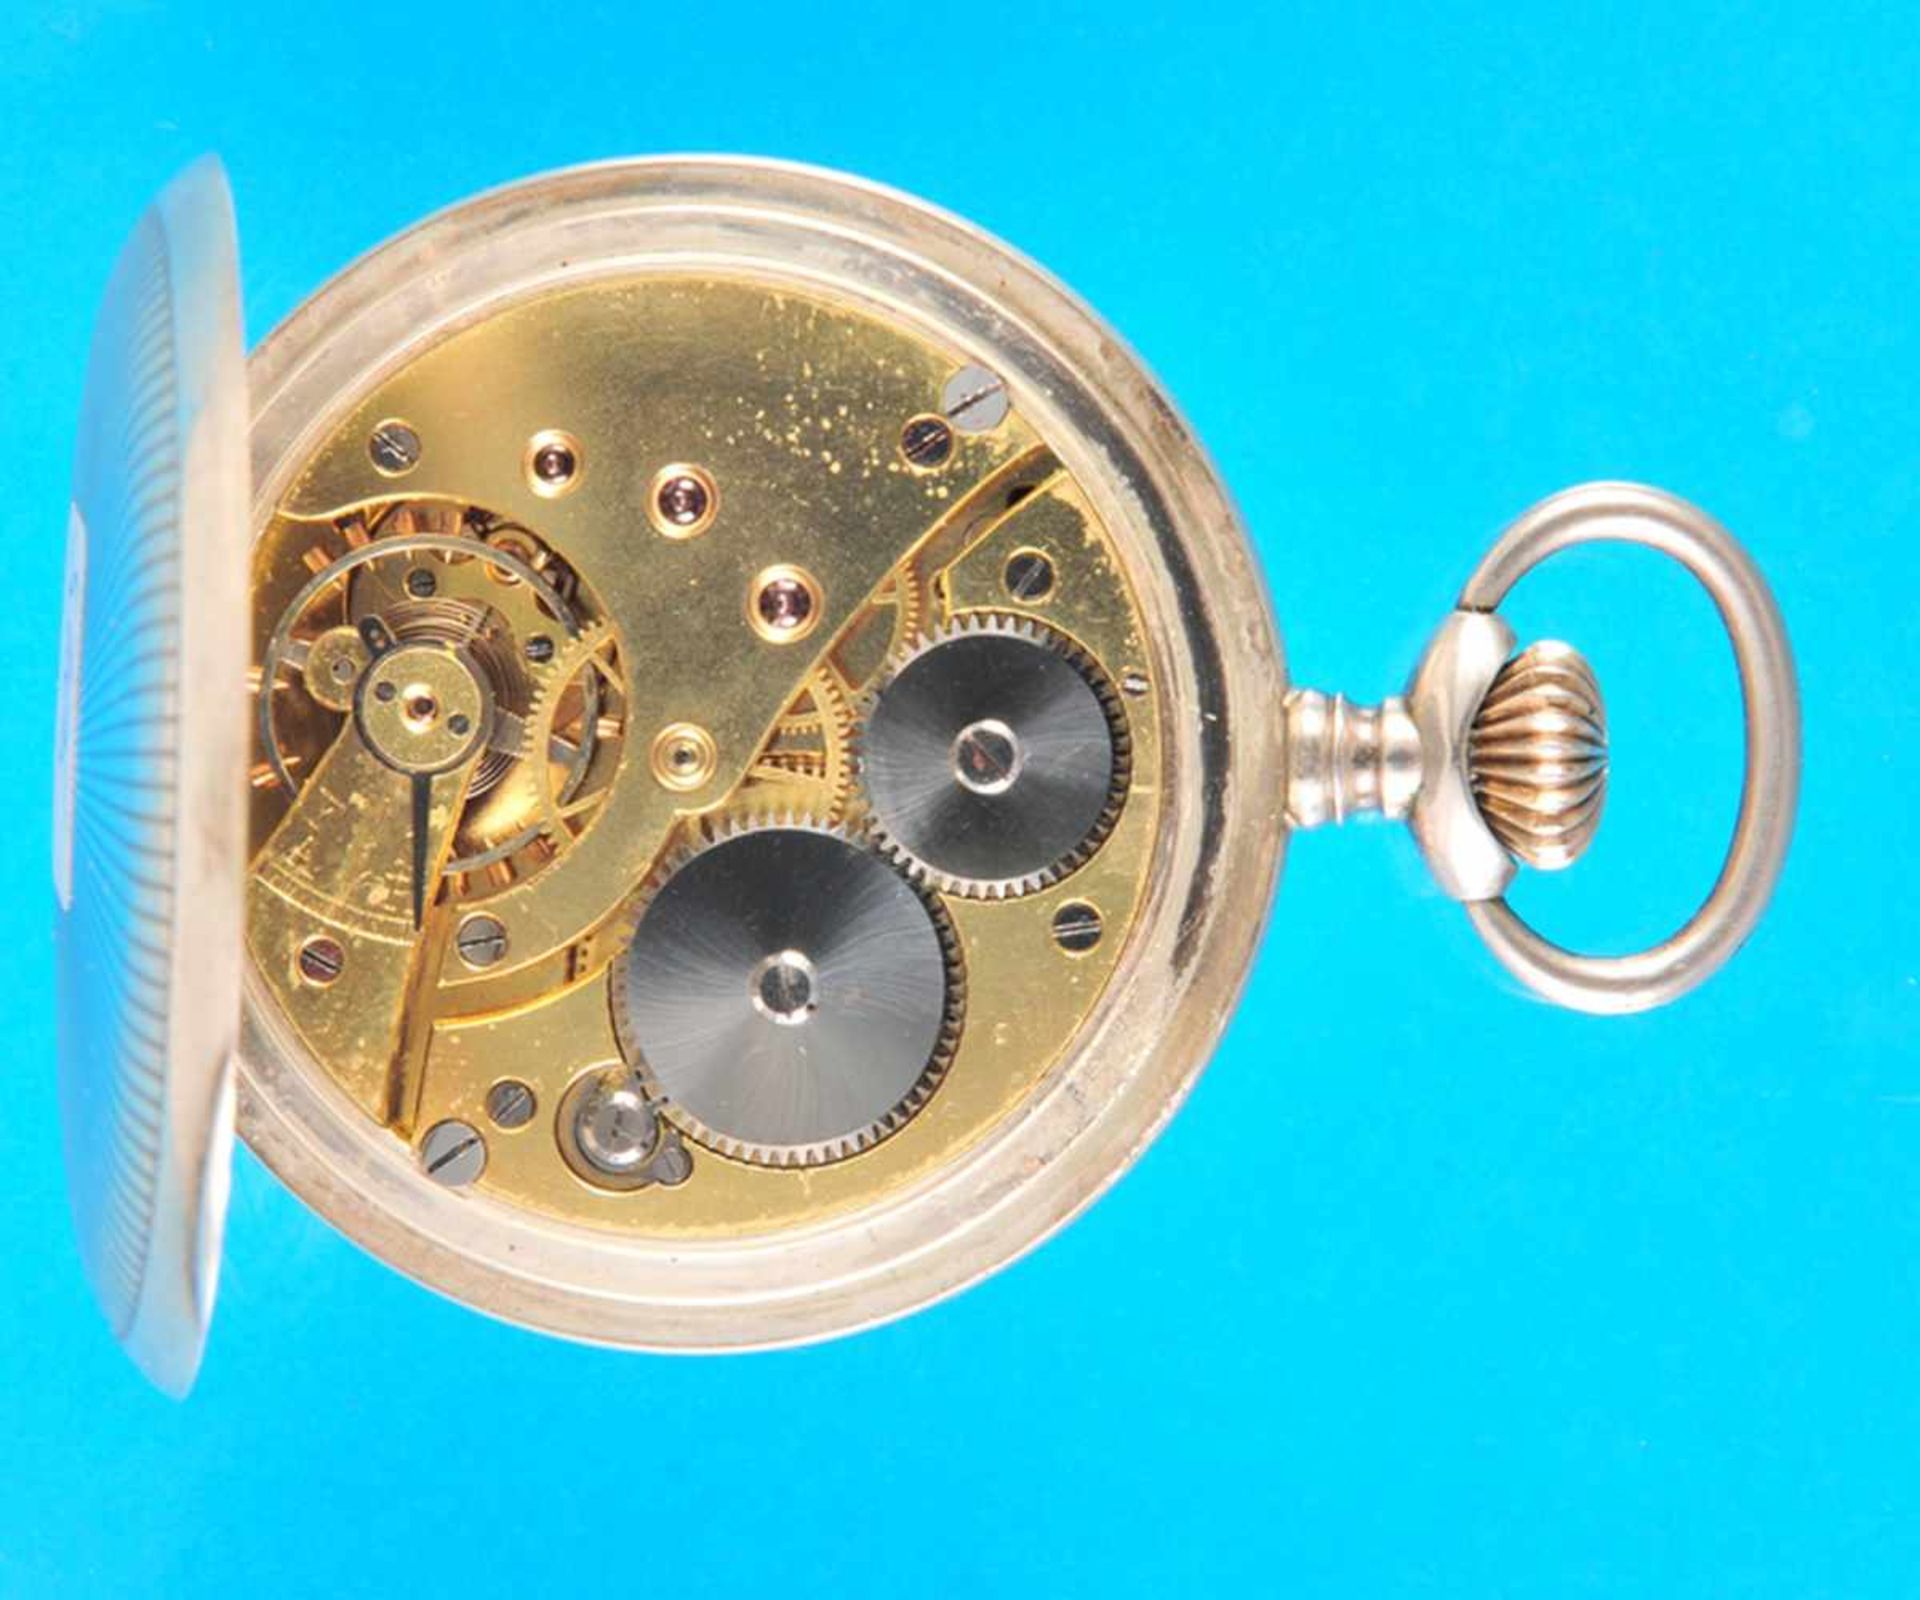 Silver pocket watch with hunting case, Tavannes Watch Co.Silbertaschenuhr mit Sprungdeckel, Tavannes - Bild 2 aus 3